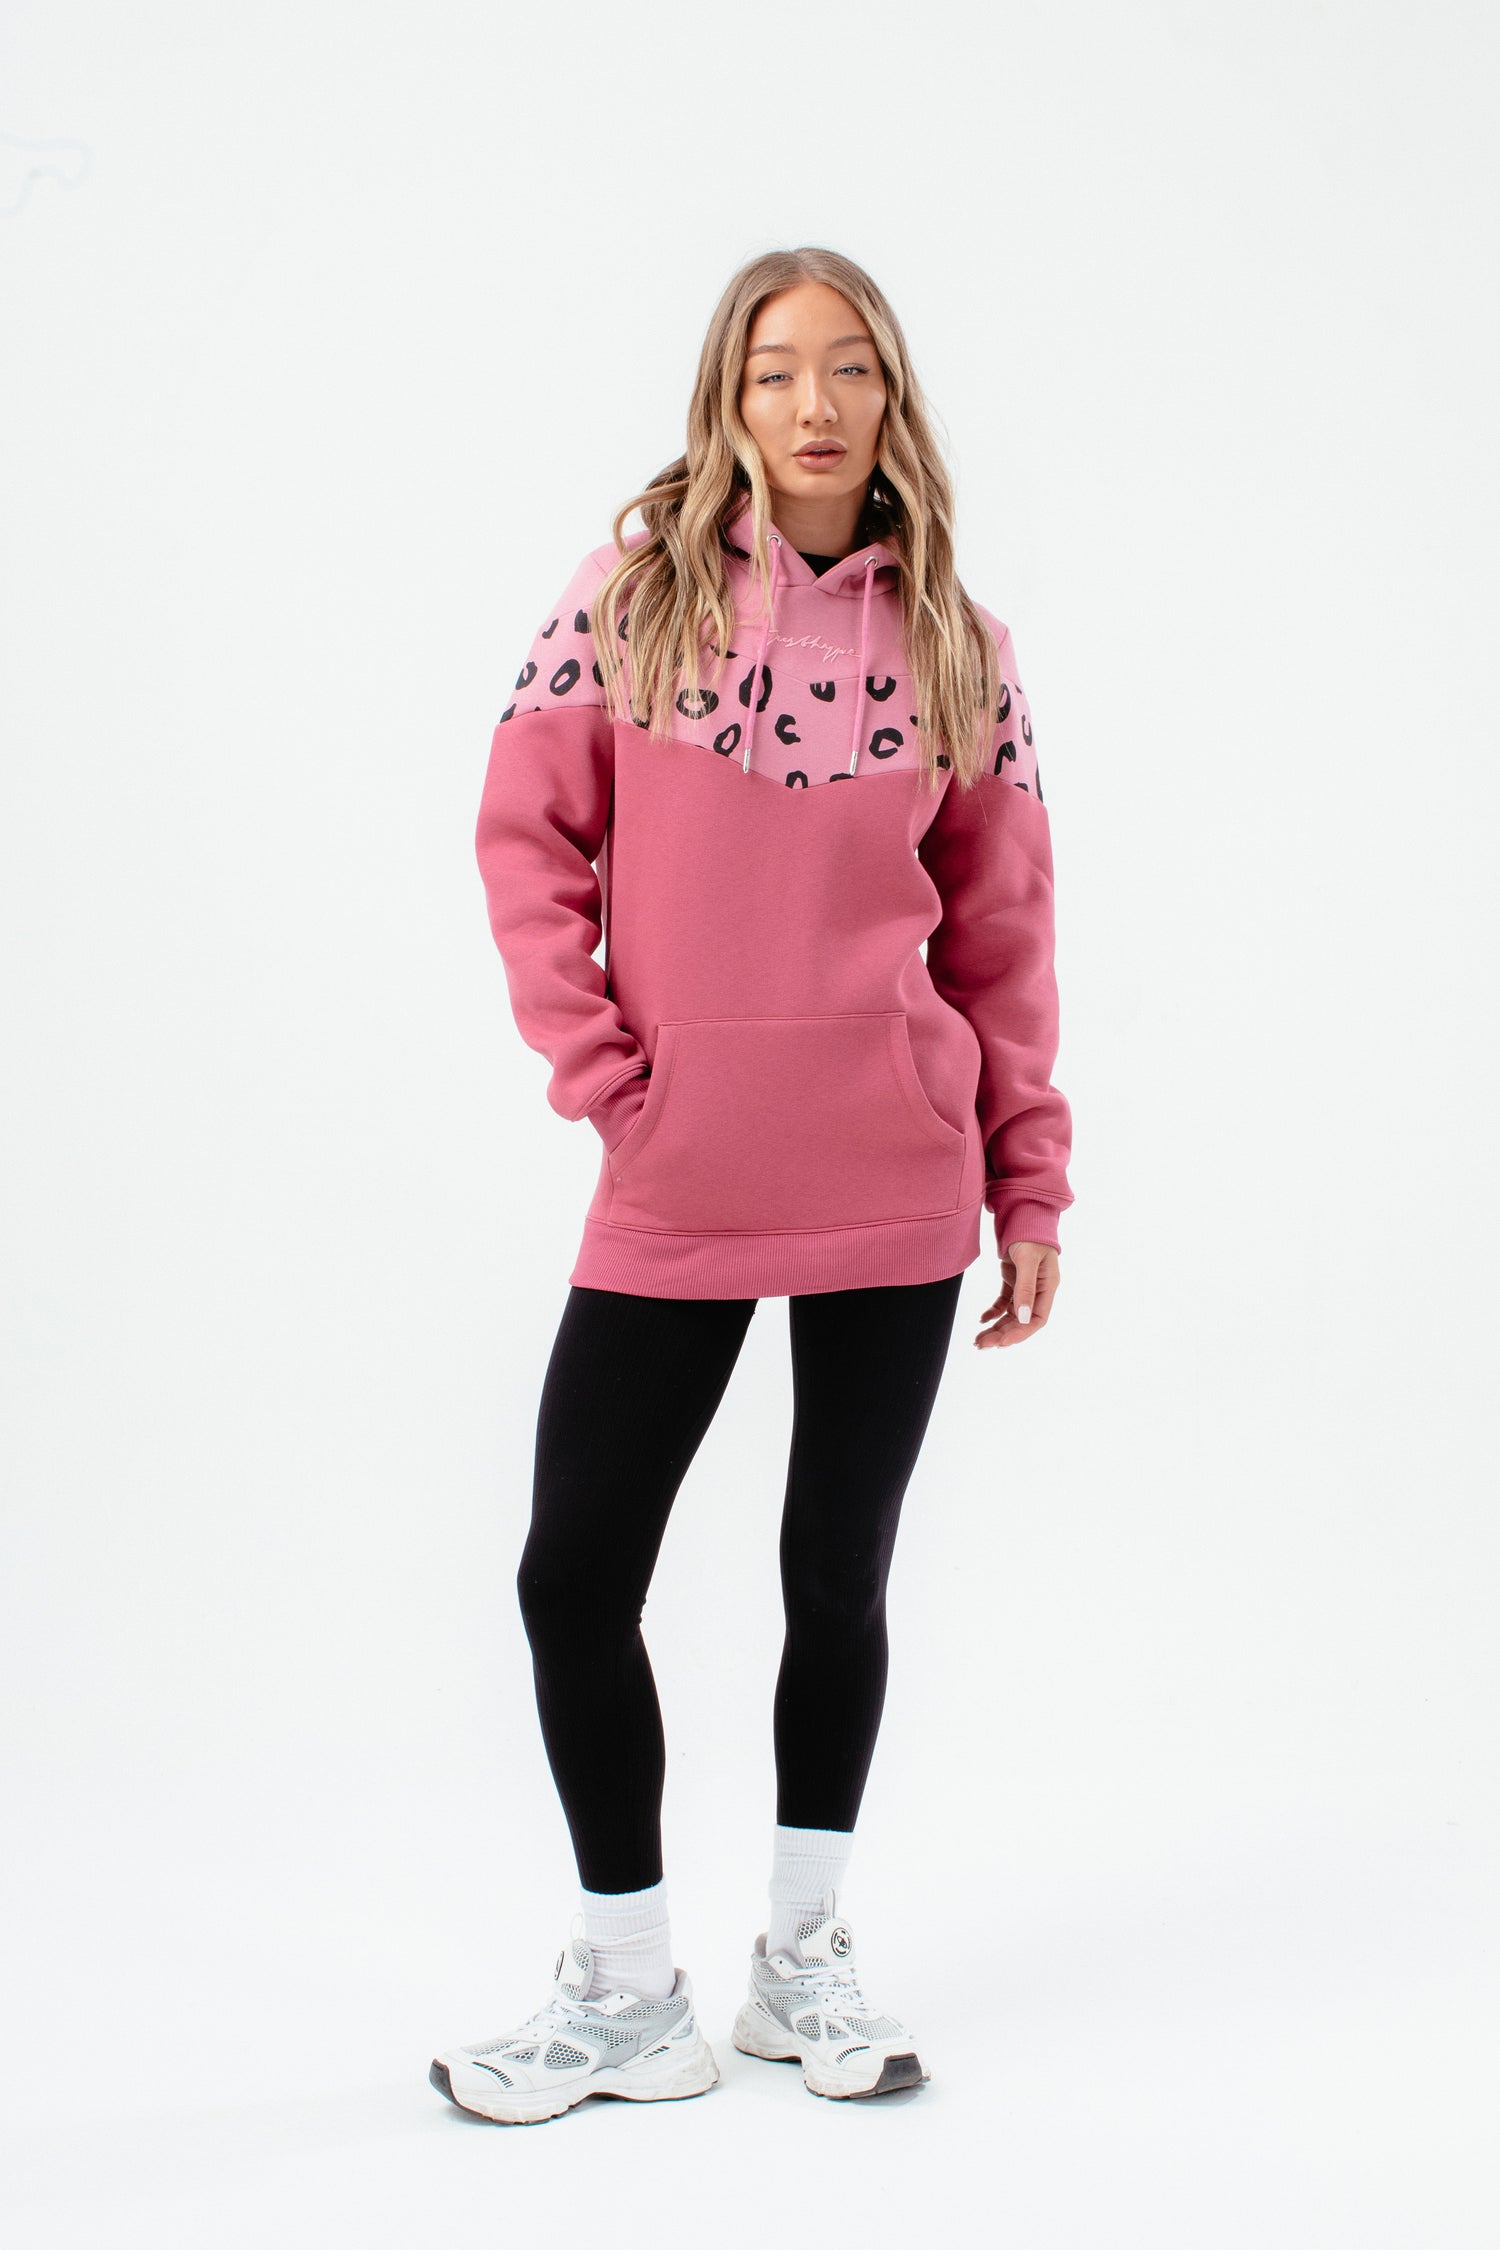 Buy Nike Women's Sportswear Club Fleece Sweatpants Pink in KSA -SSS